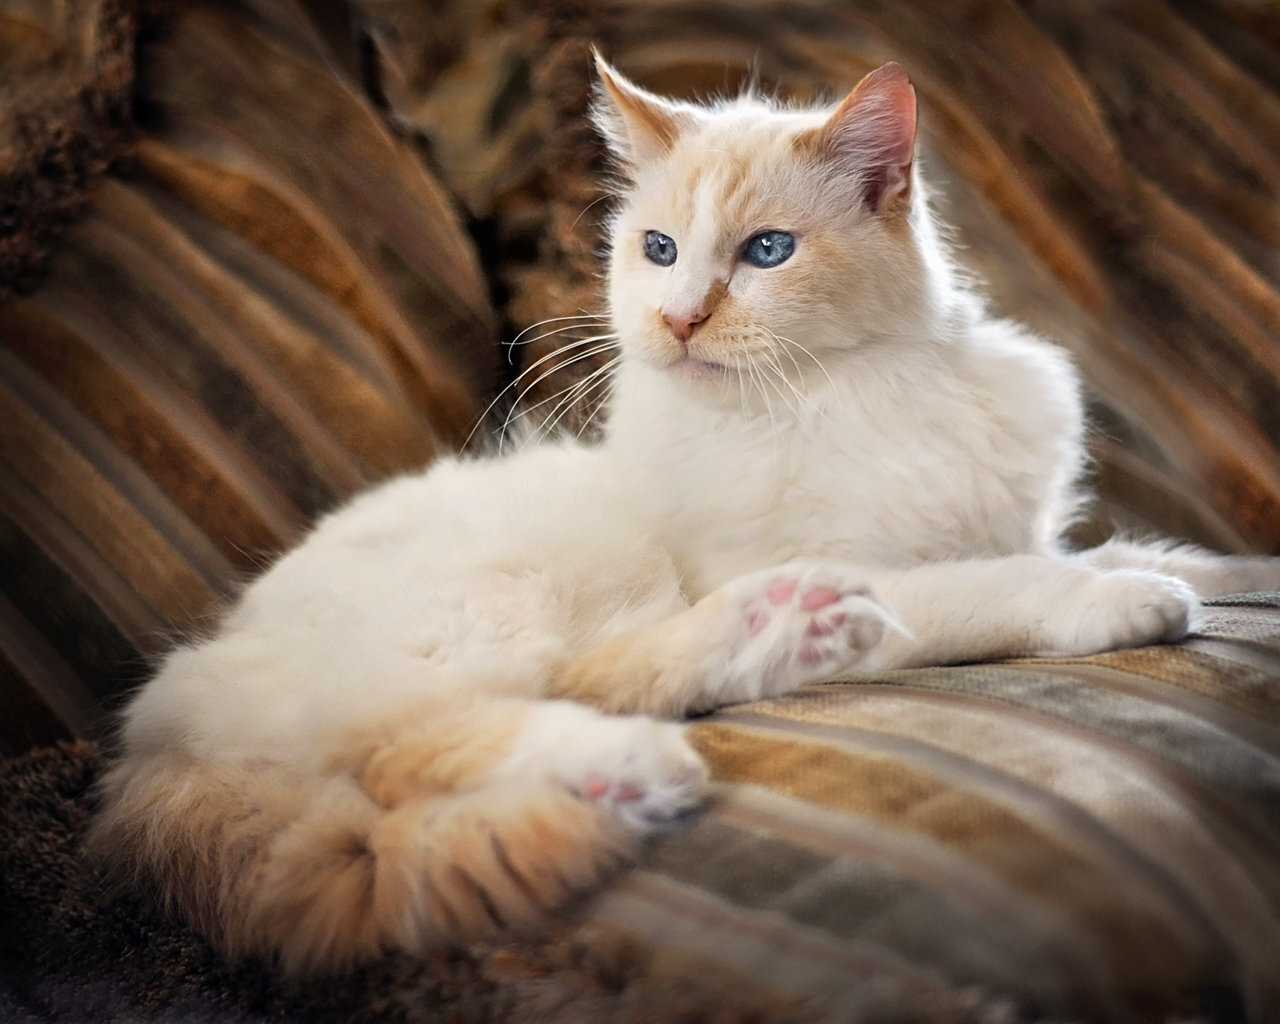 os-Angeles-pet-photographer-Paw-Prints-Pet-Portraiture-cat